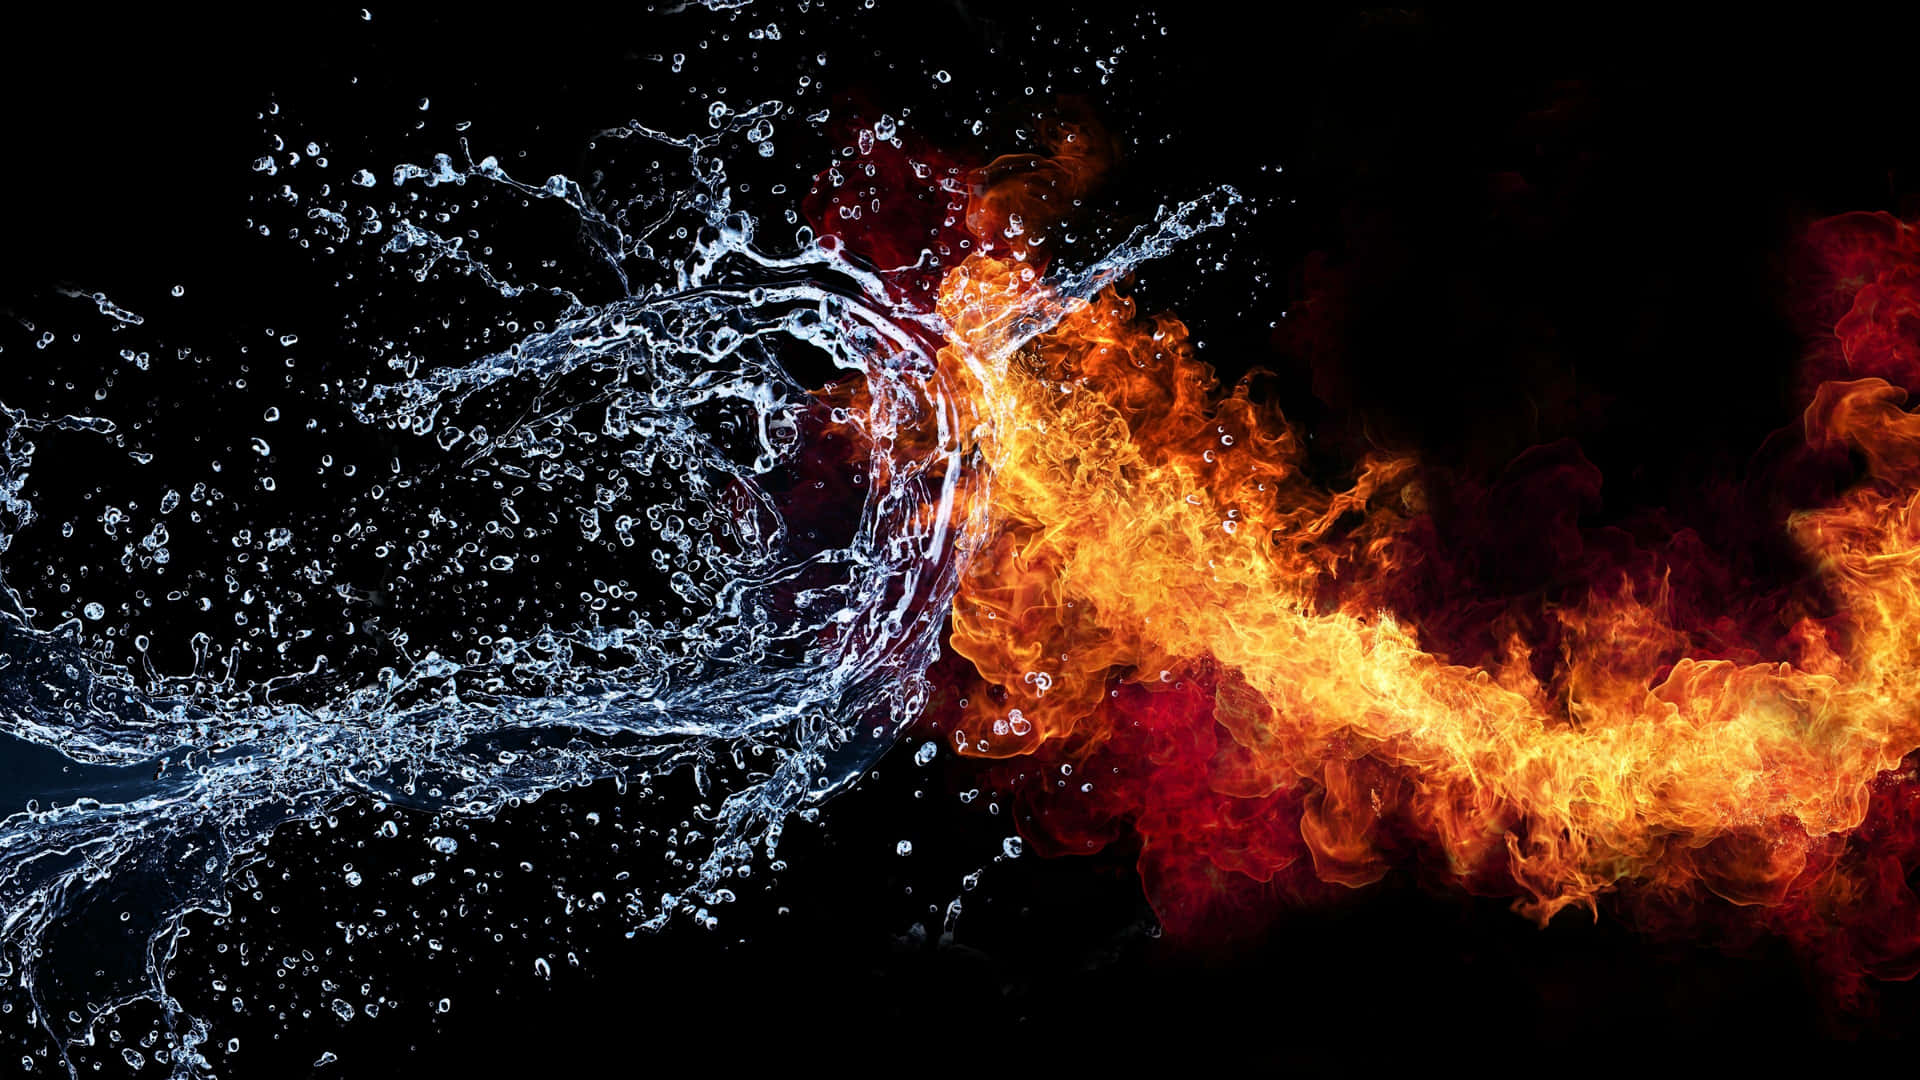 Widersprüchlicheelemente, Feuer Und Wasser, In Harmonischem Gleichgewicht Zusammen. Wallpaper